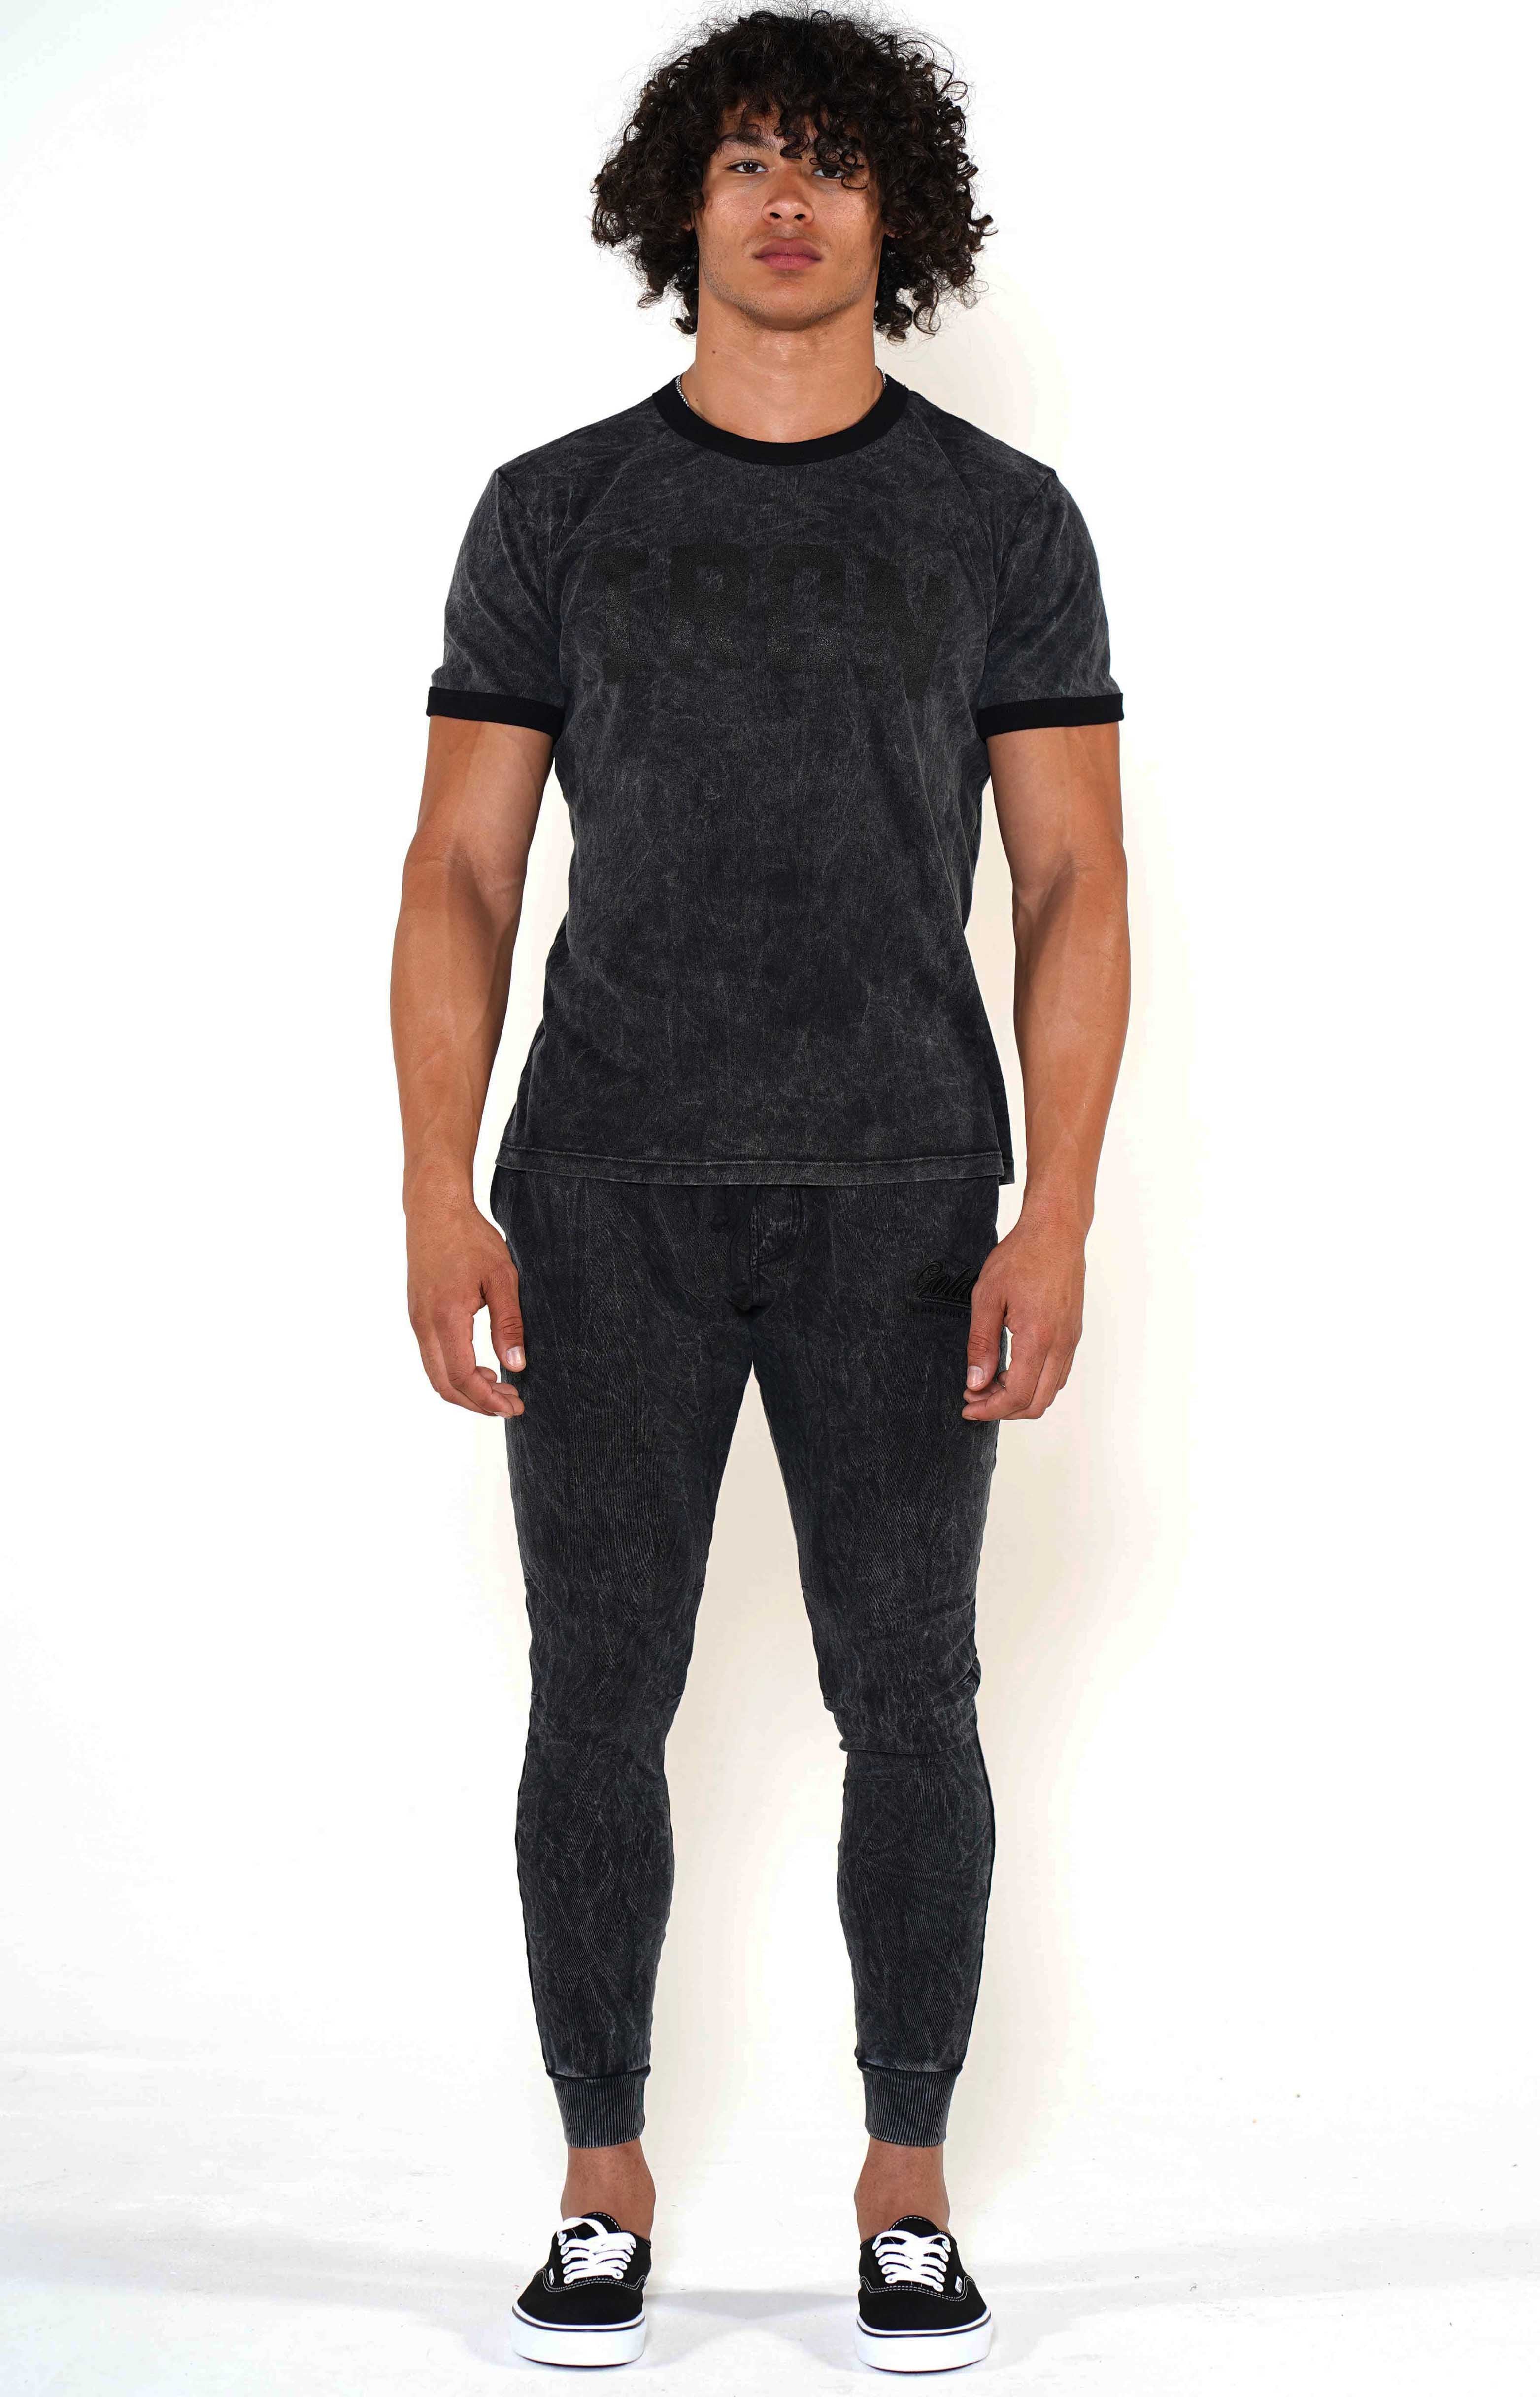 Men's Mineral Black/Black Ringer T-Shirt - Golden Aesthetics